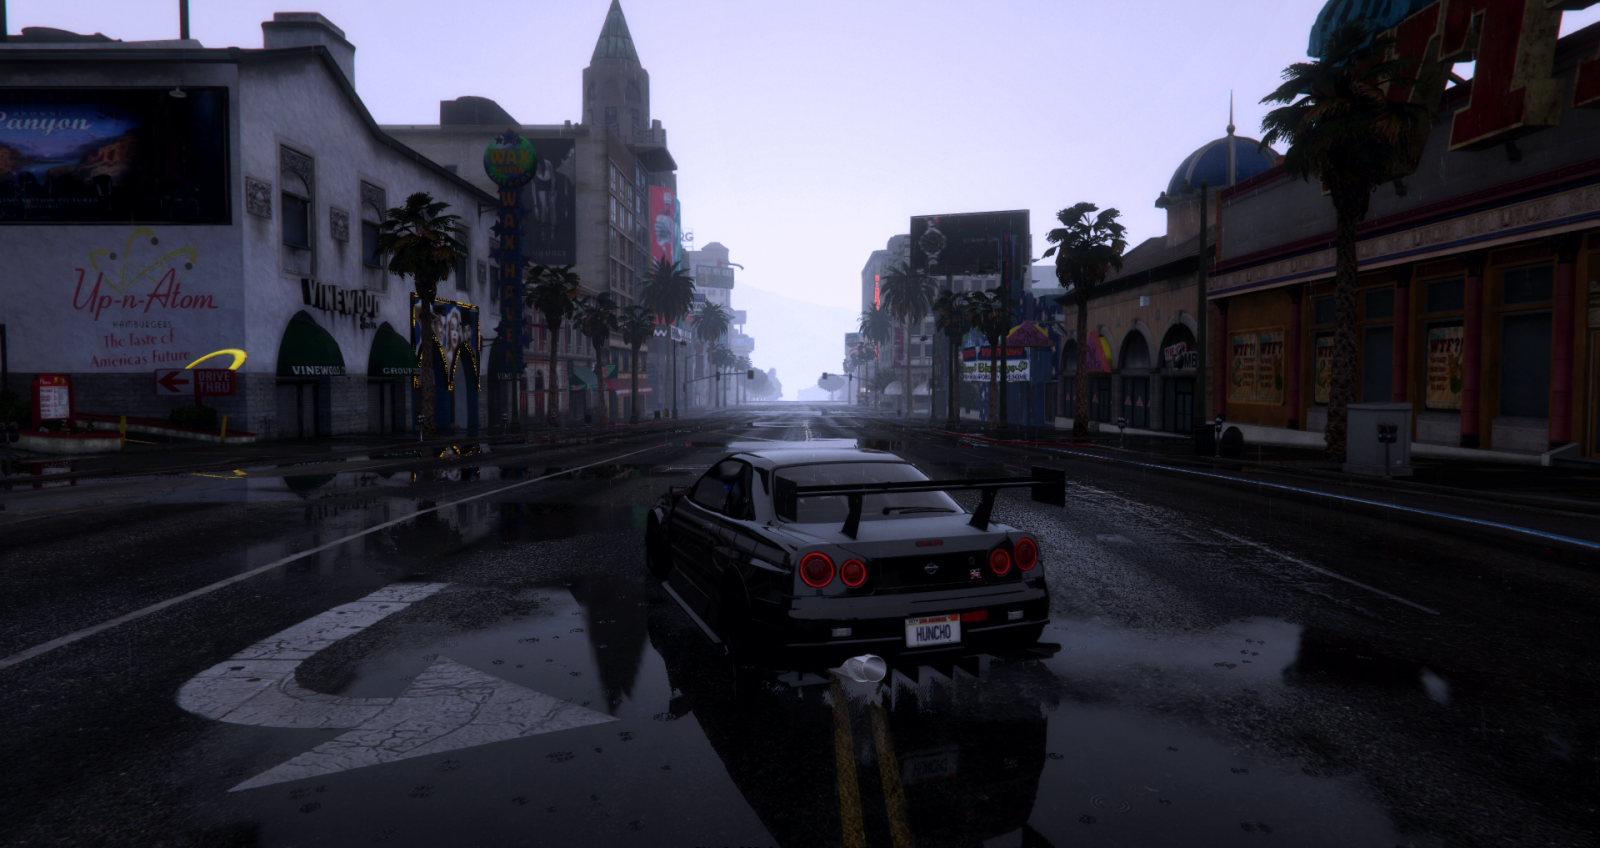 Rainy streets